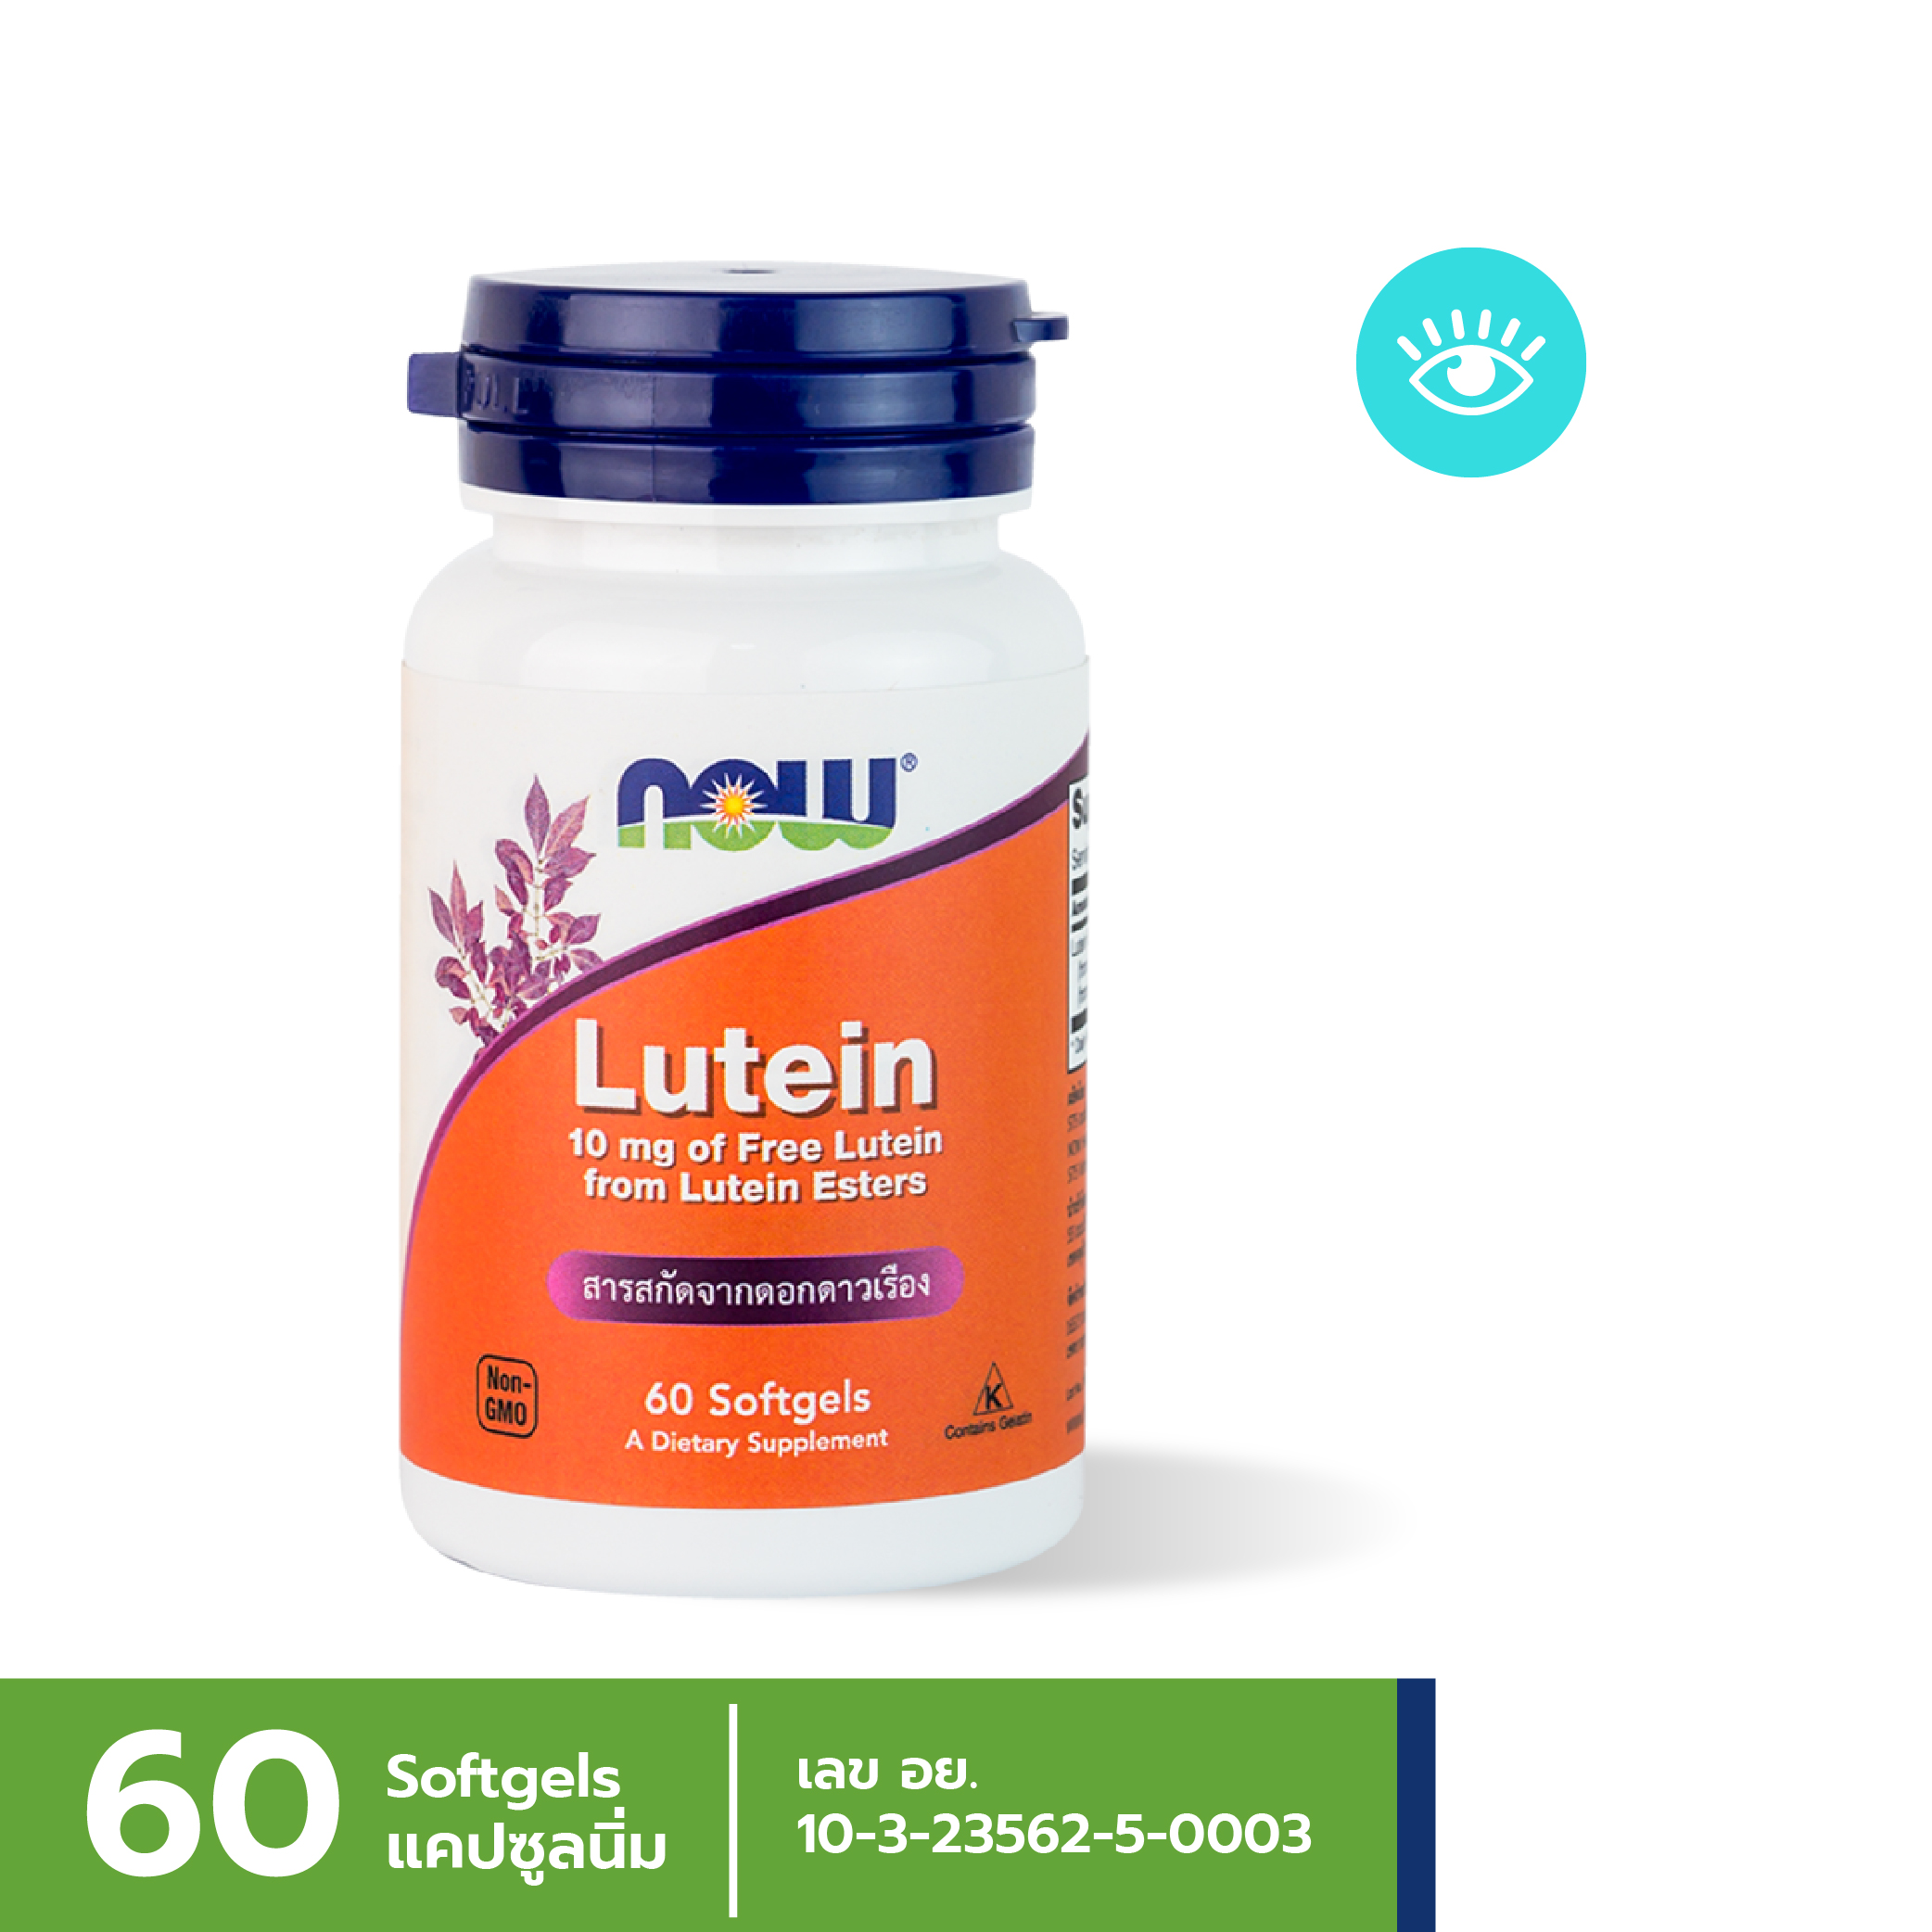 [ลูกค้าใหม่กรอก FORYOU89 ลดเลย 89.-] NOW Lutein 10 mg (60 Softgels)